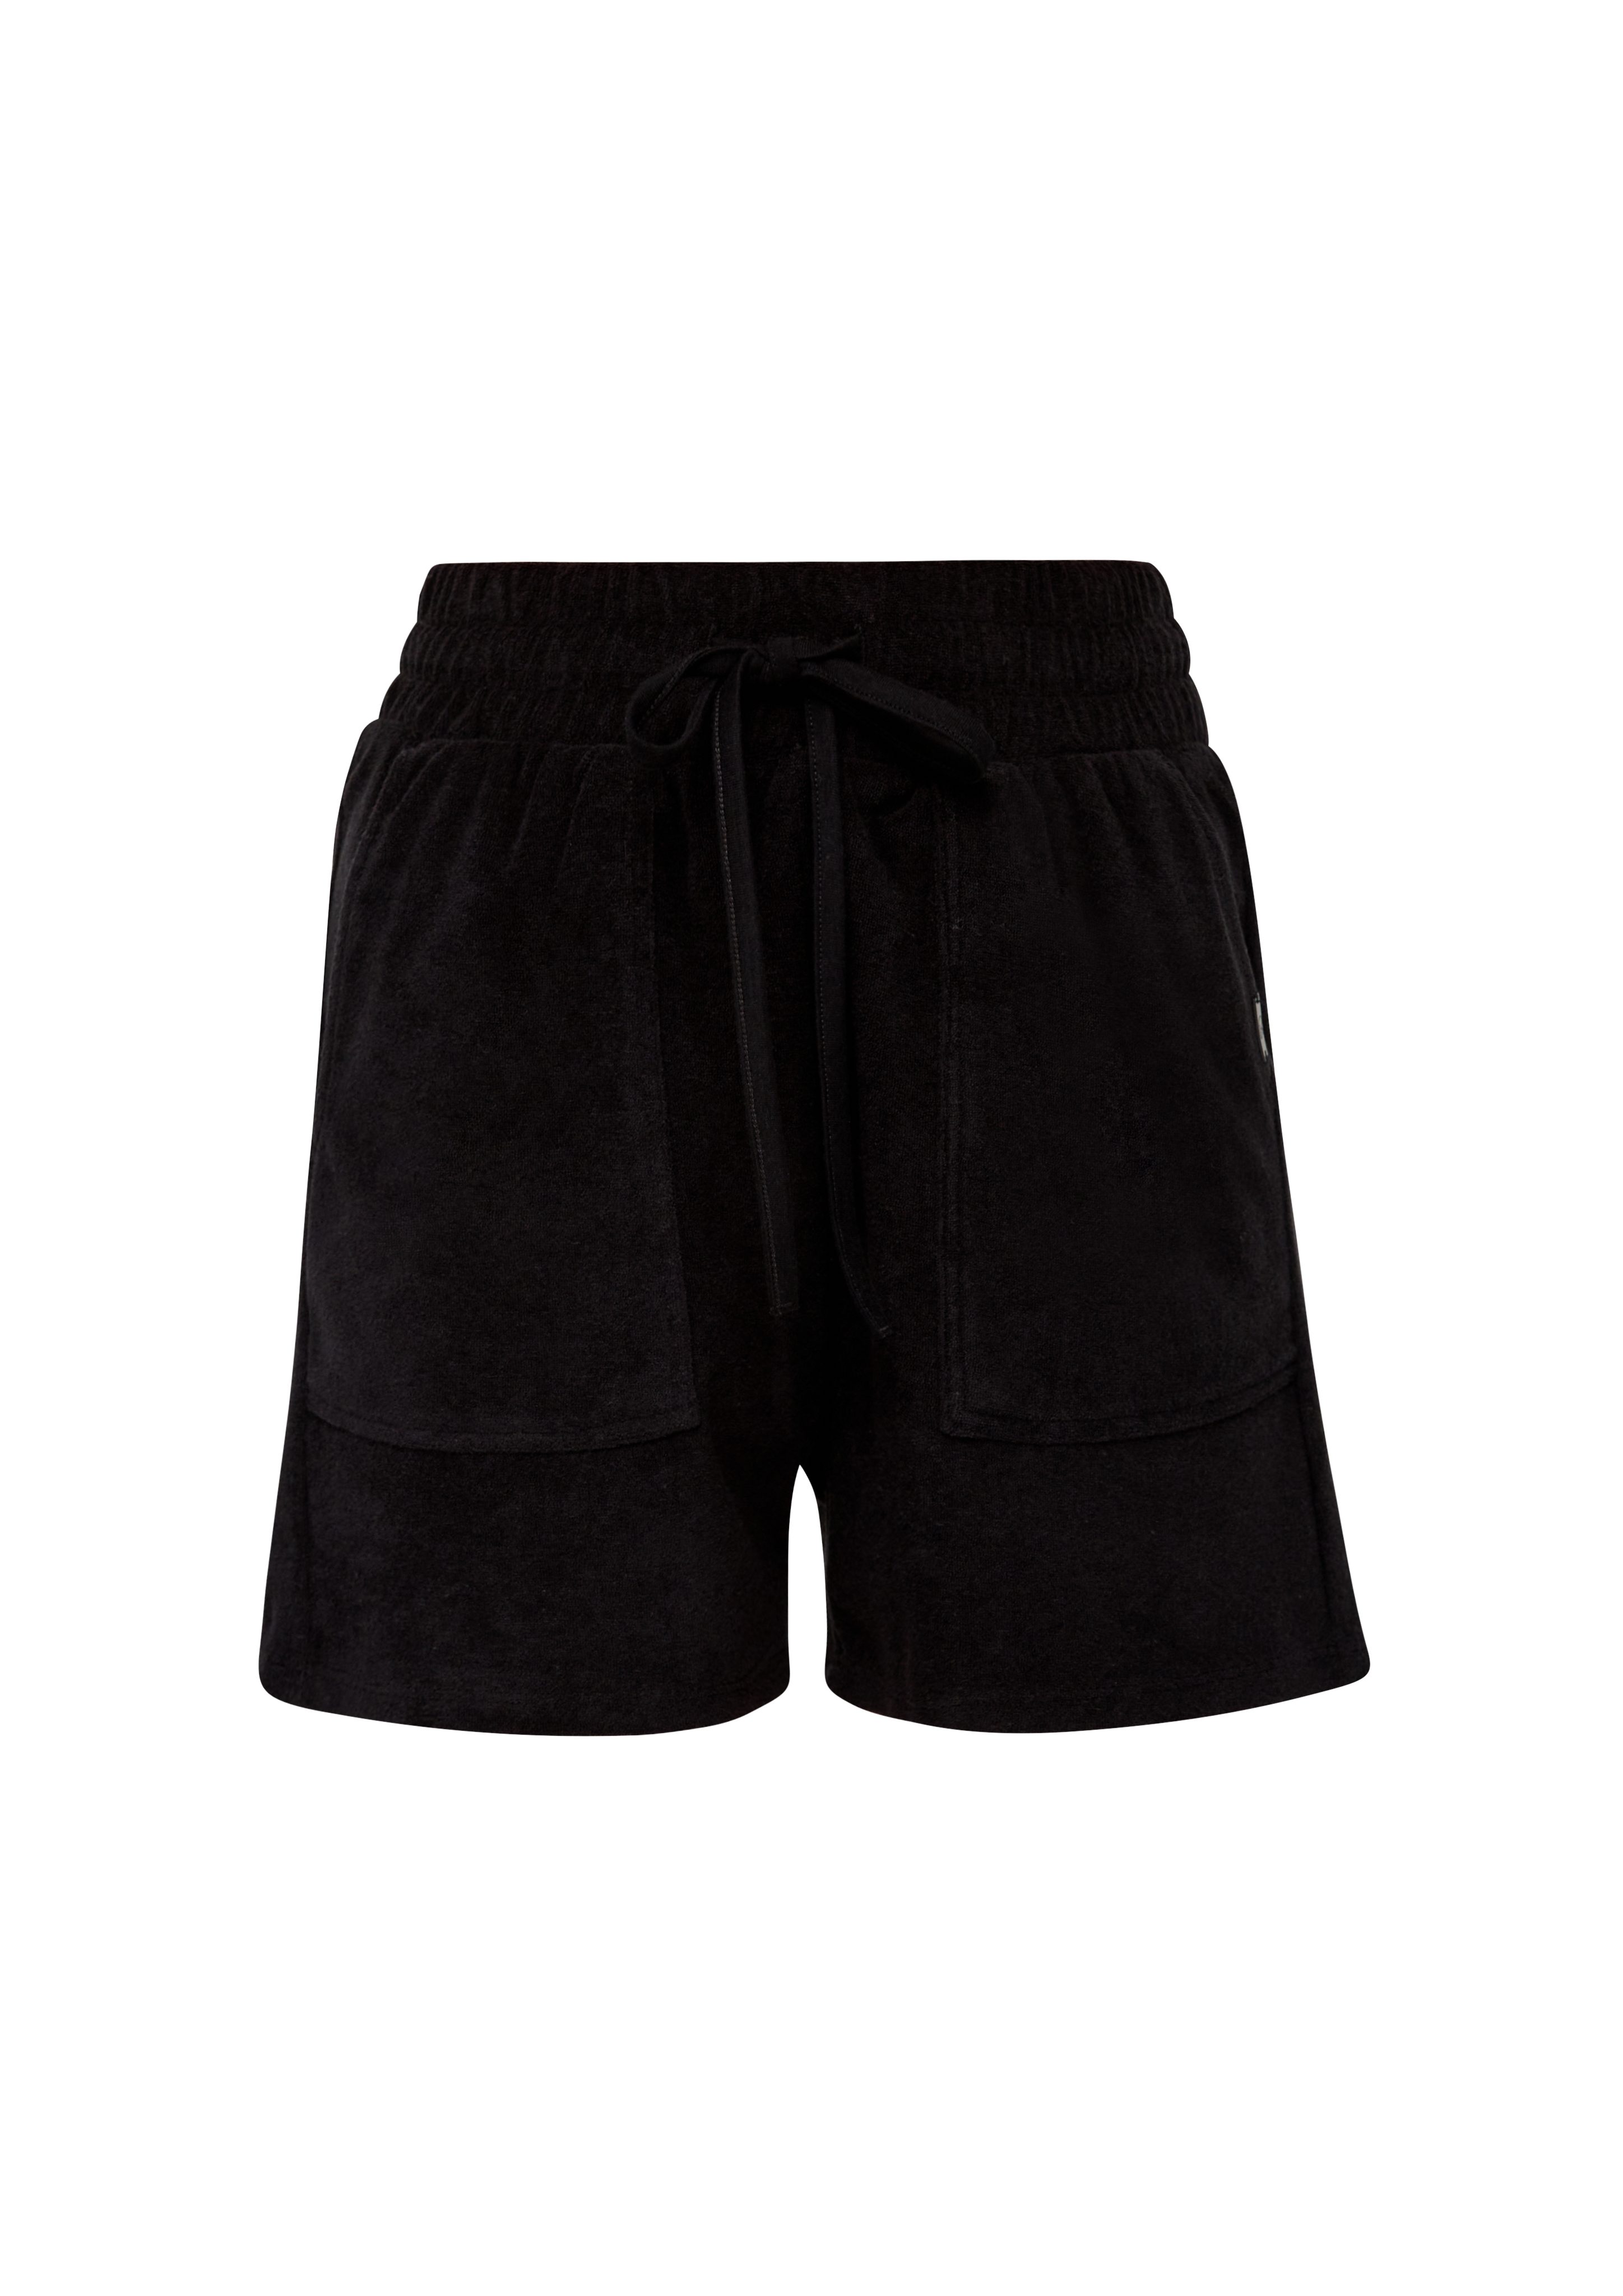 Elastikbund schwarz Frottee-Shorts Shorts Relaxed: QS mit